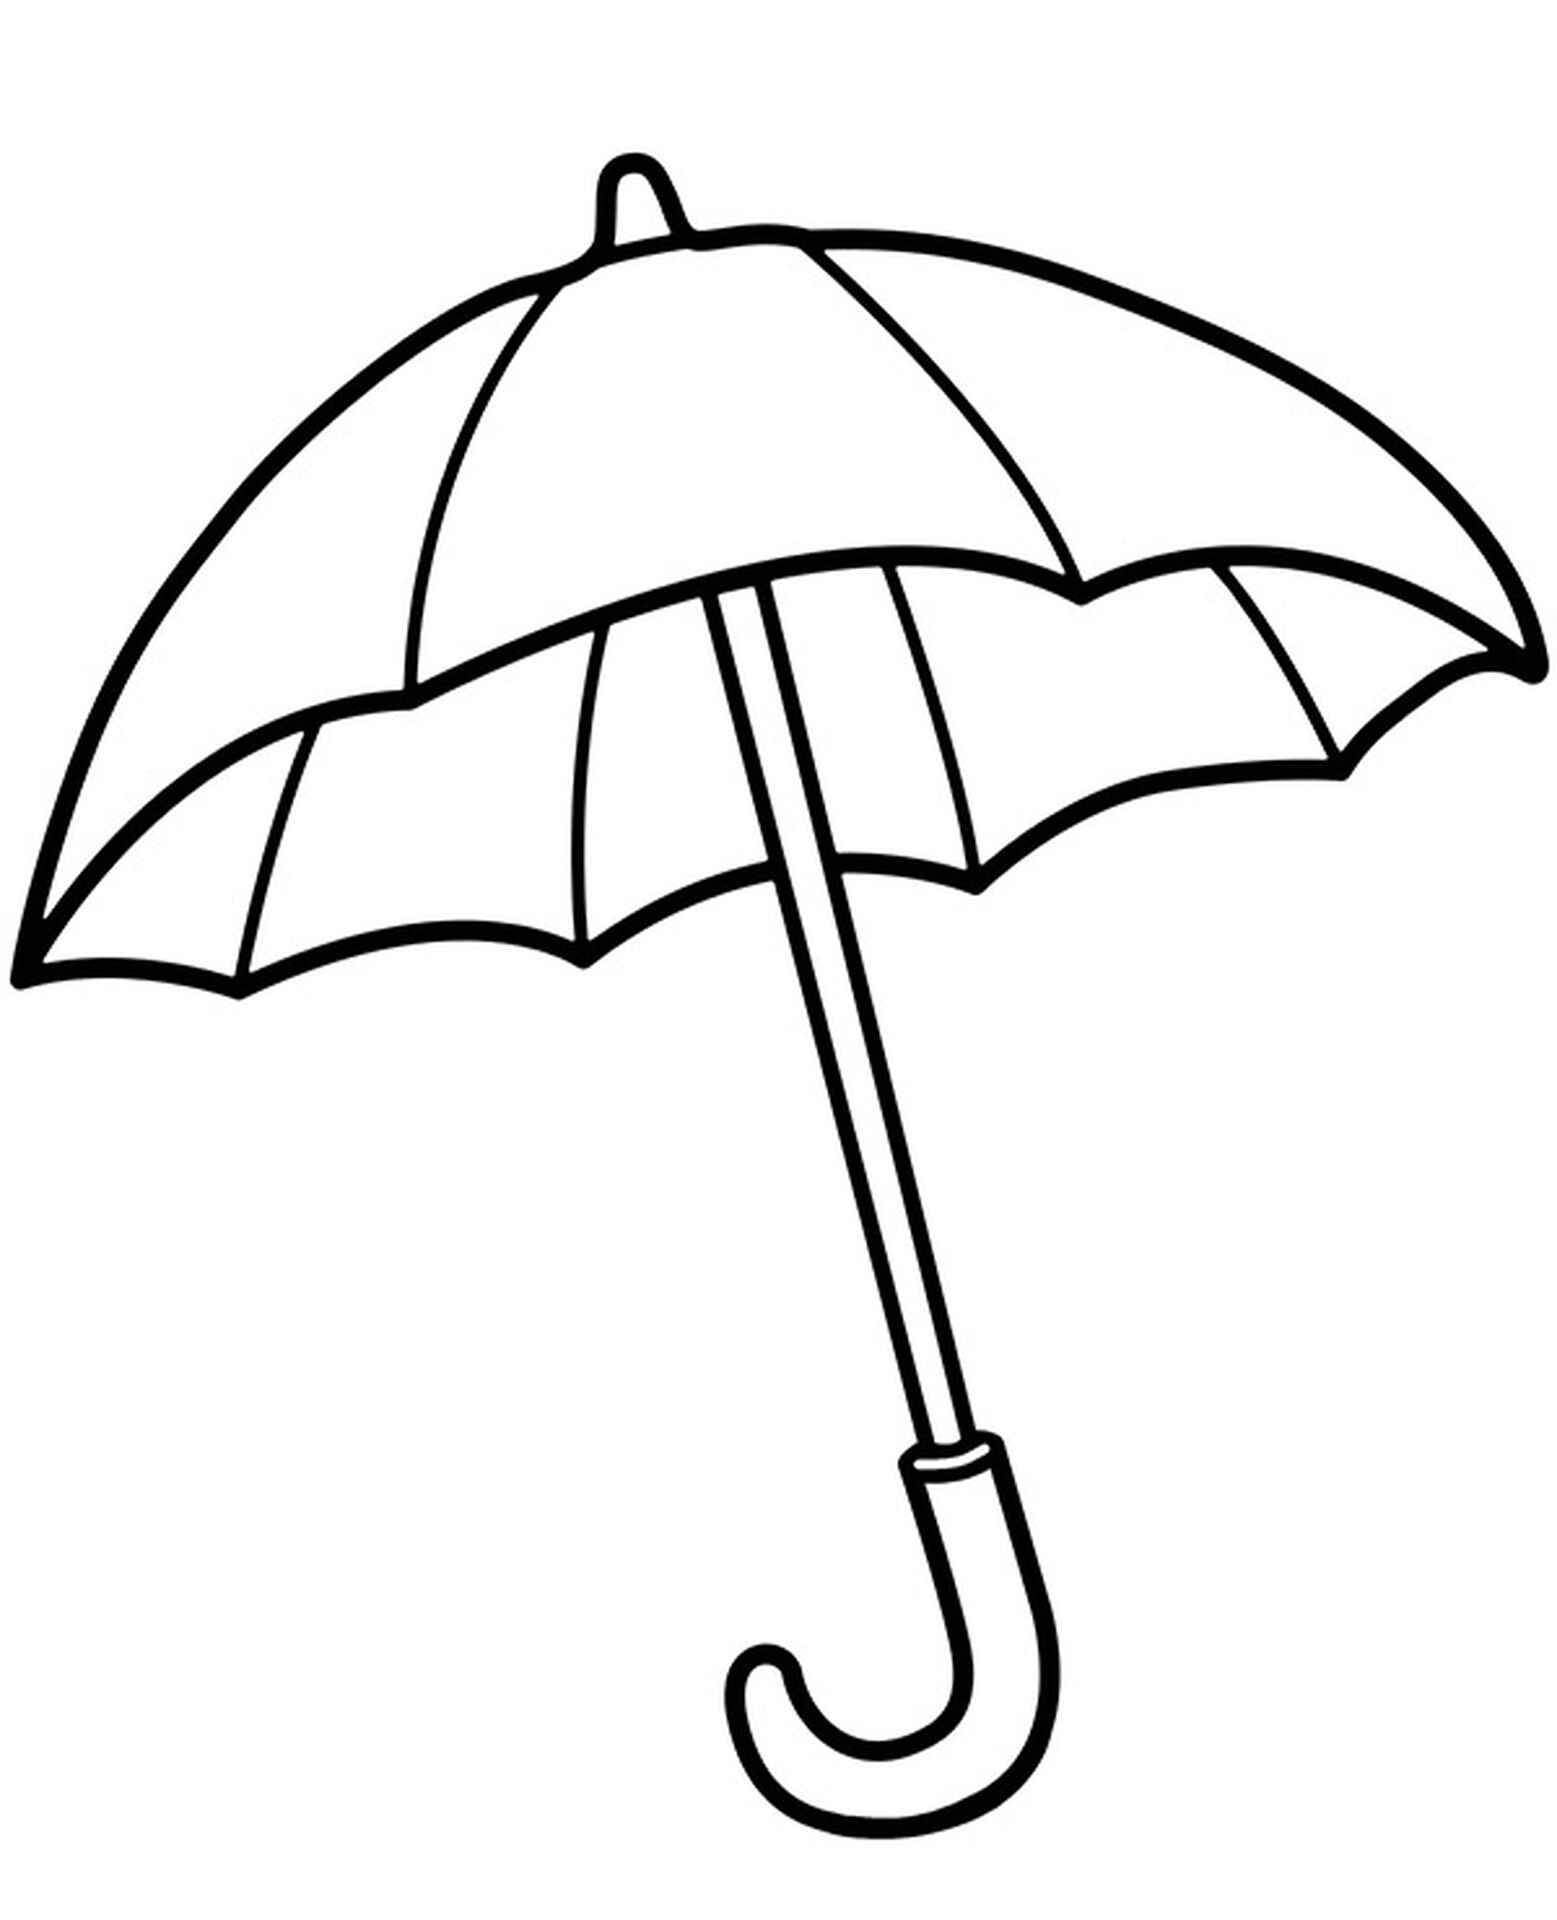 Зонтик карандашом